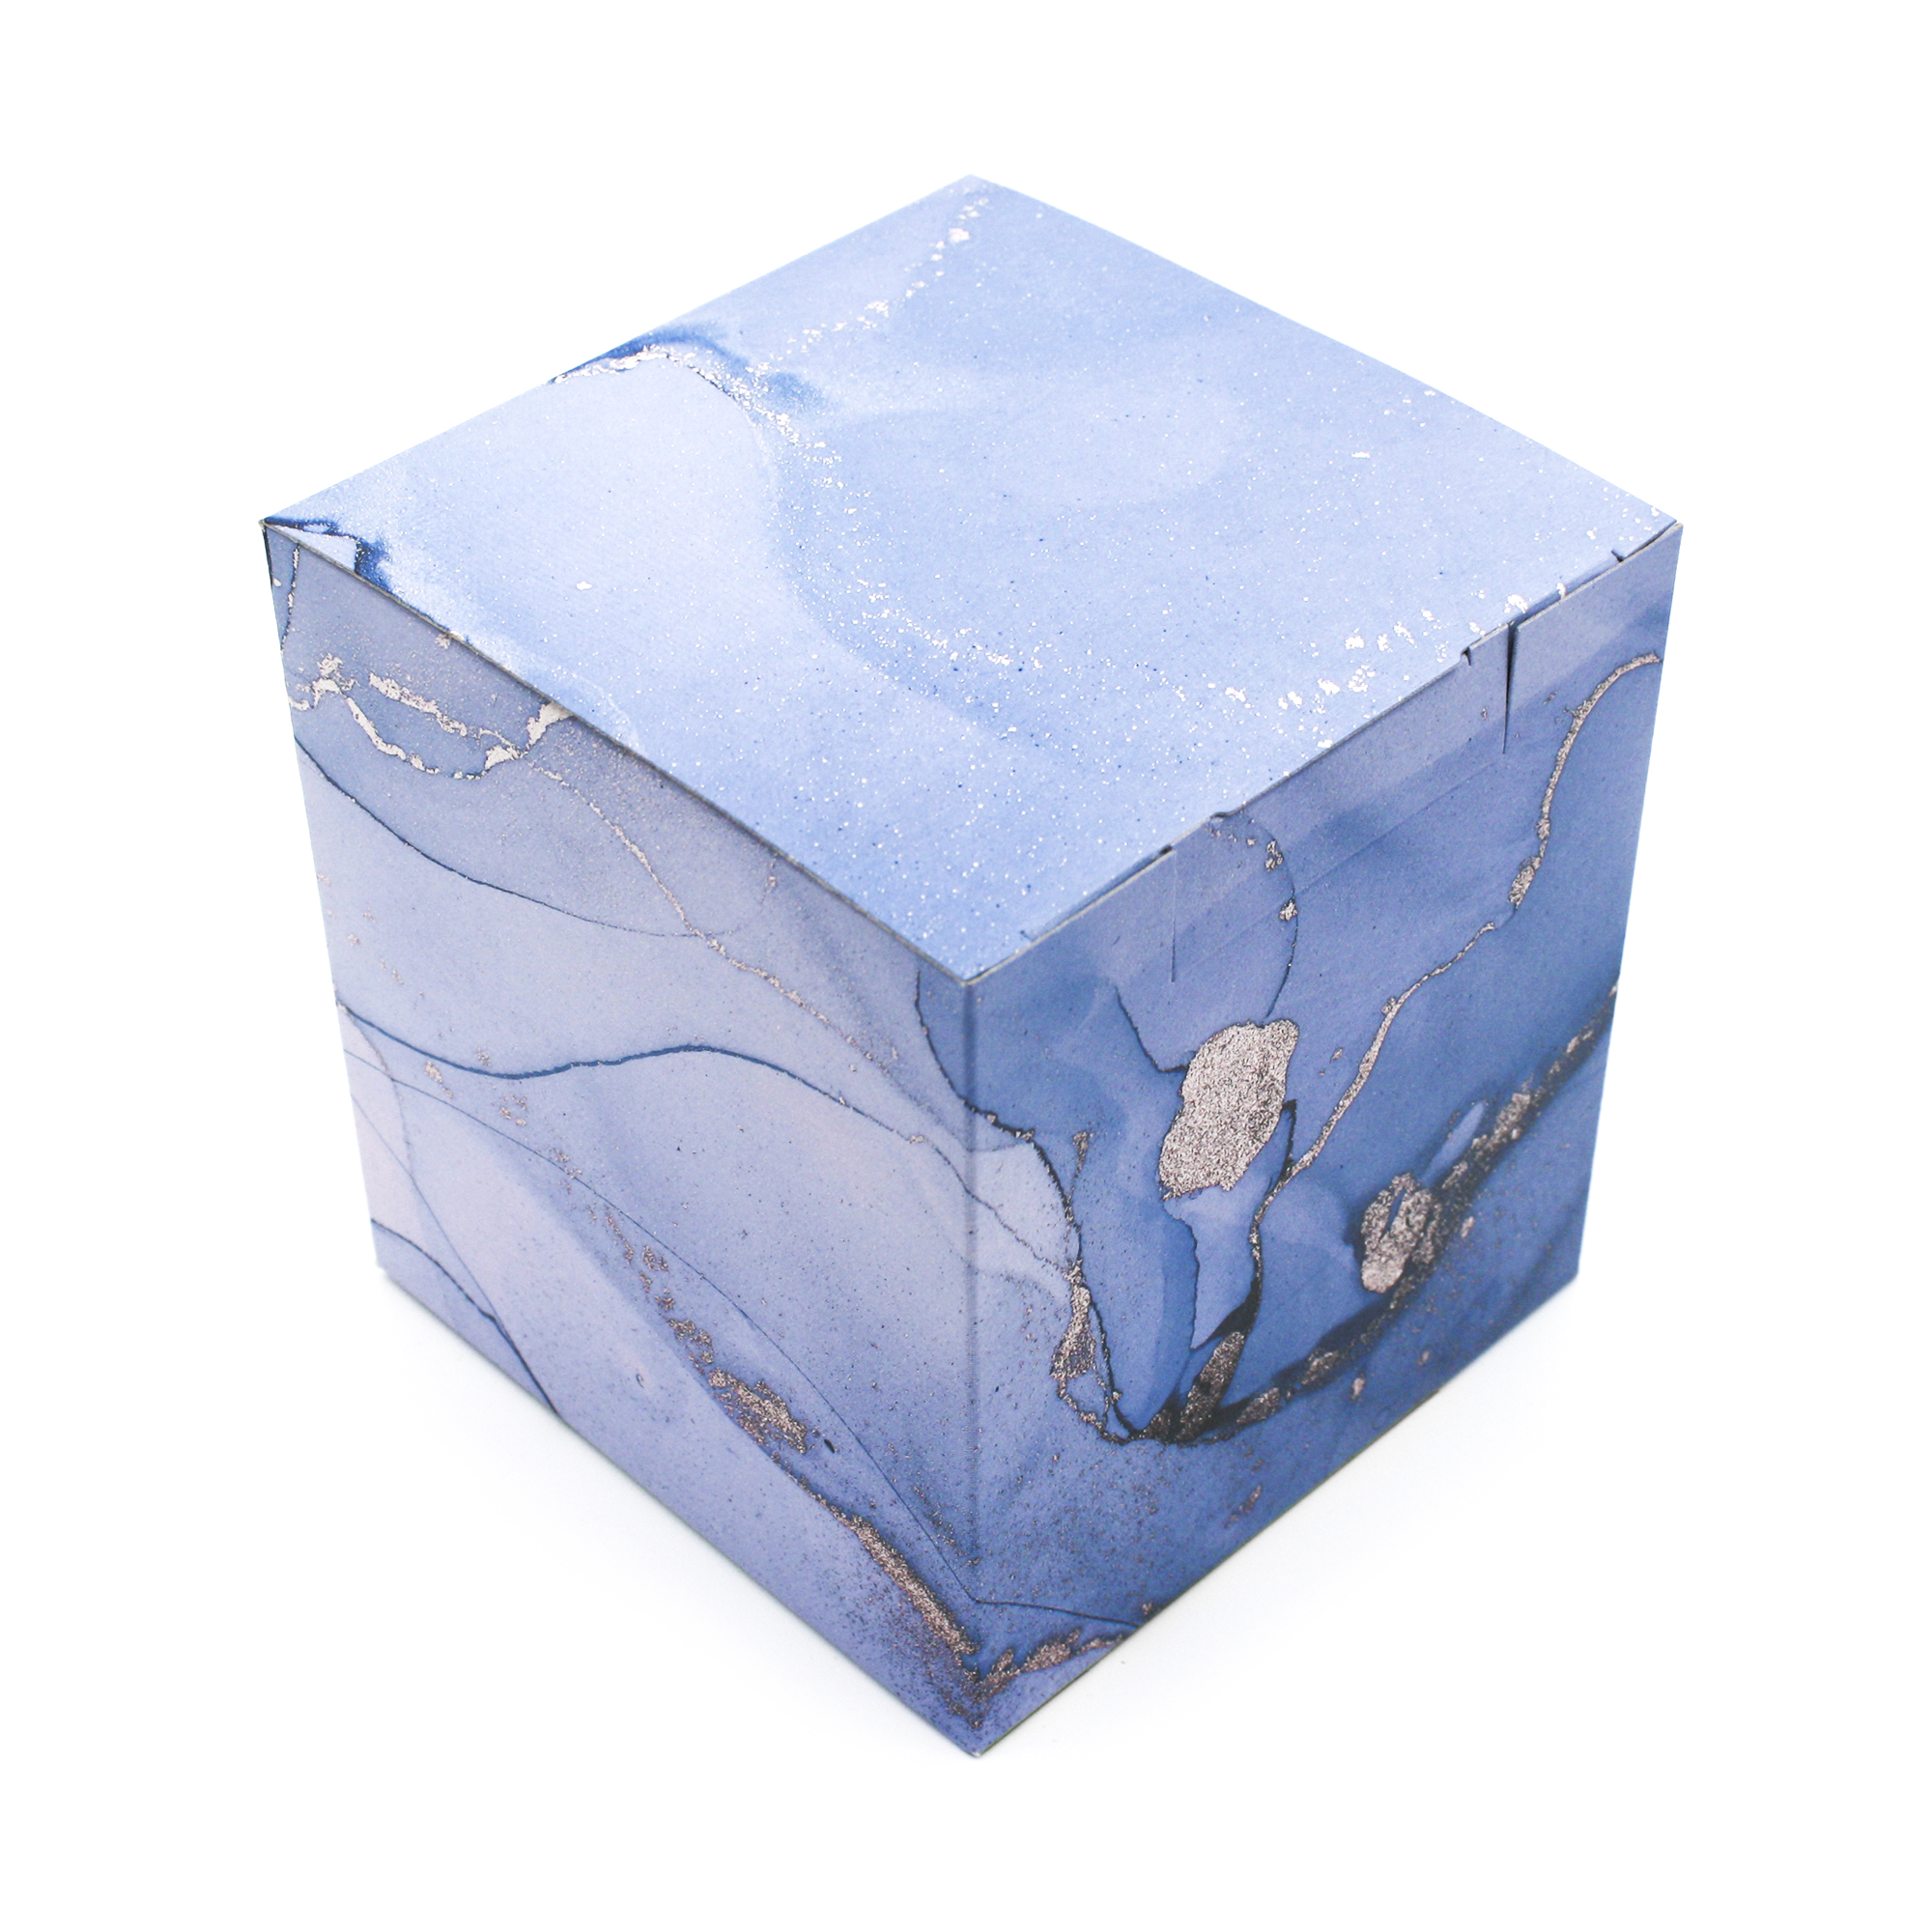 Gift box No.3 "Blue marble" (+RUB 190)